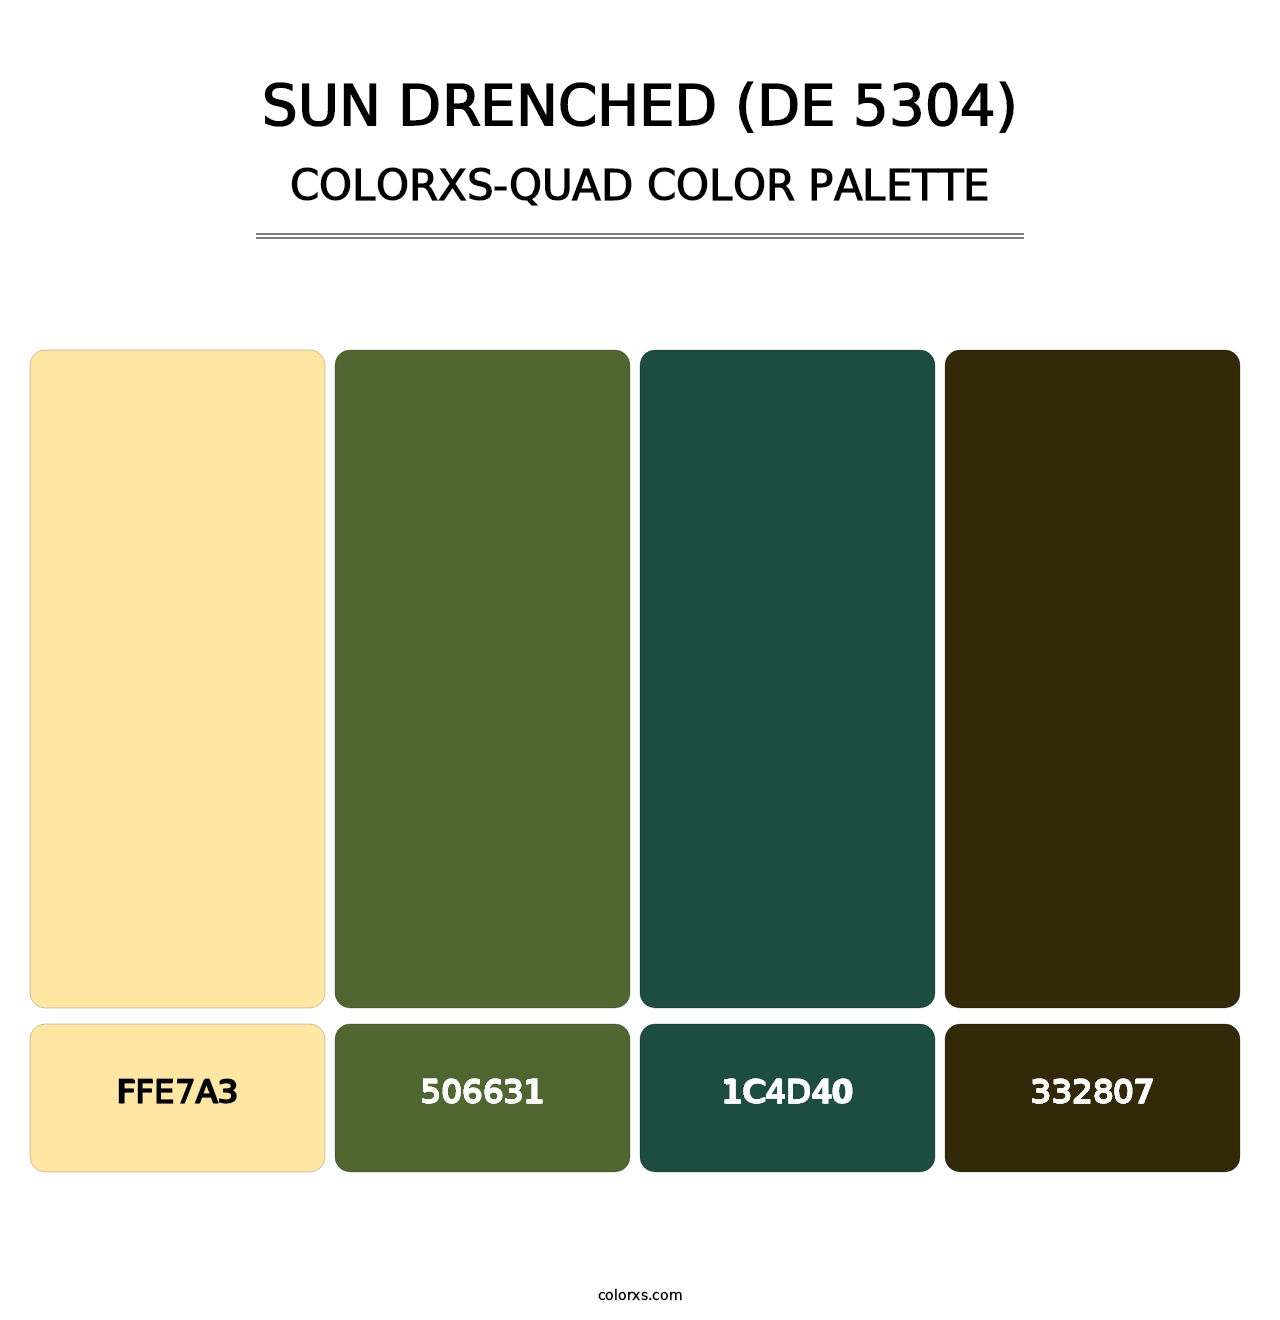 Sun Drenched (DE 5304) - Colorxs Quad Palette